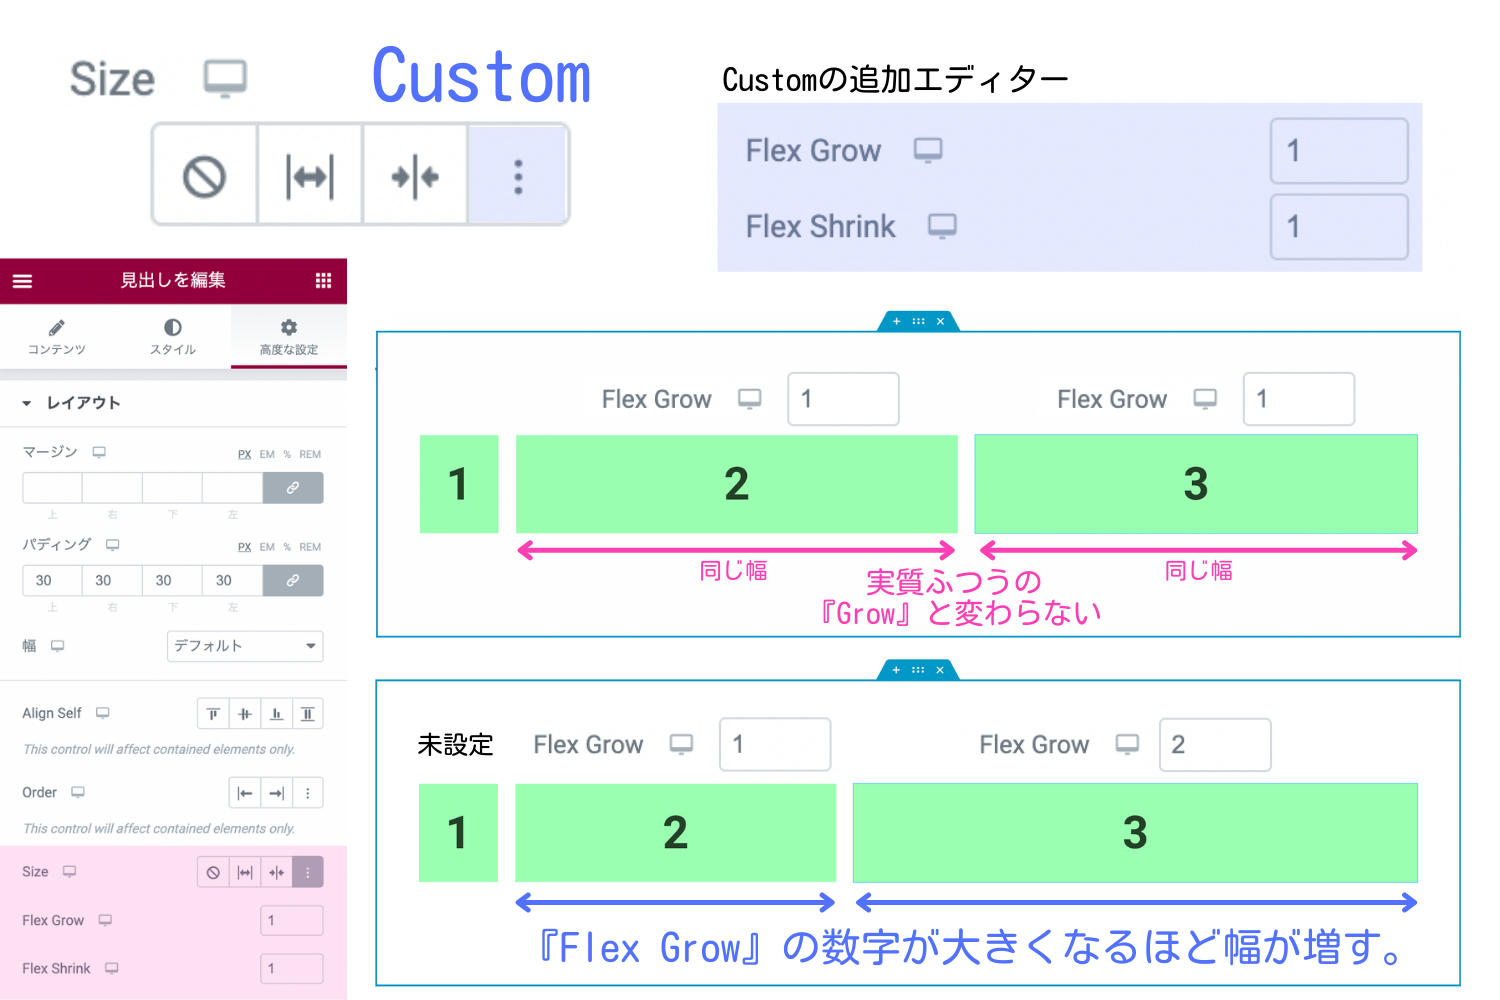 『Size』の『Custom』で『Flex Grow』を設定したときサンプル比較